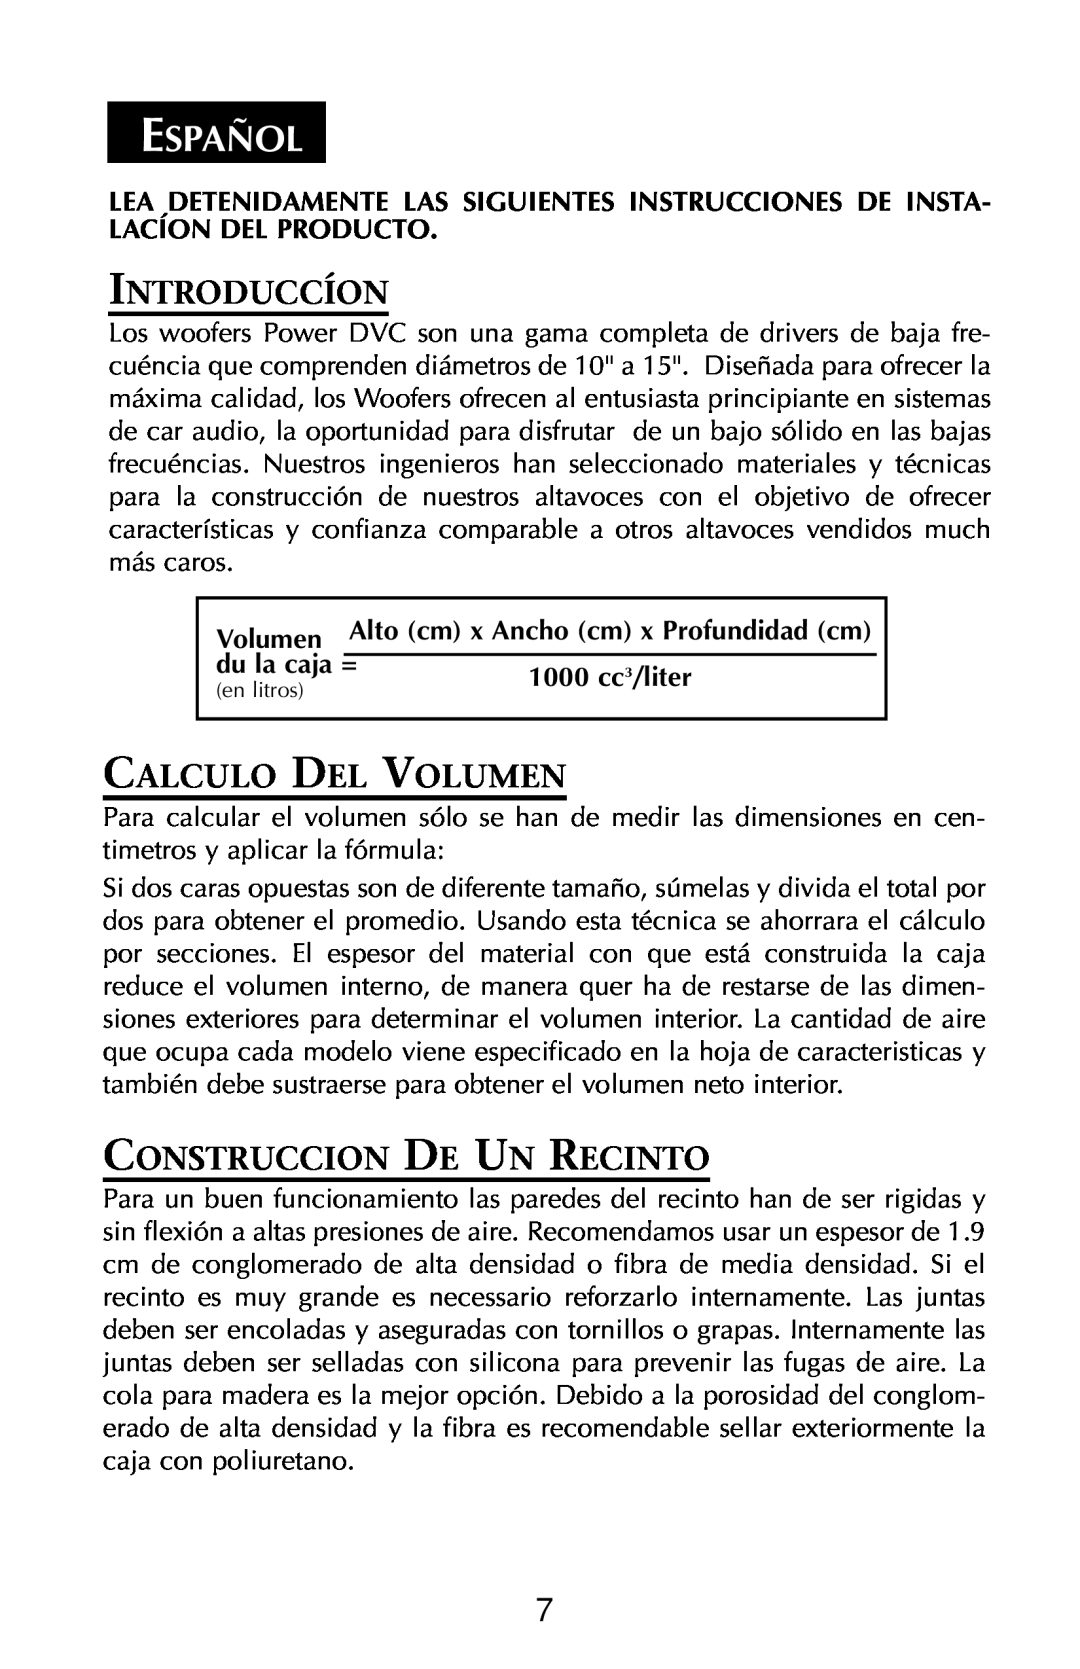 Rockford Fosgate RFD2218, RFP3208 manual Español, Introduccíon, Calculo Del Volumen, Construccion De Un Recinto 